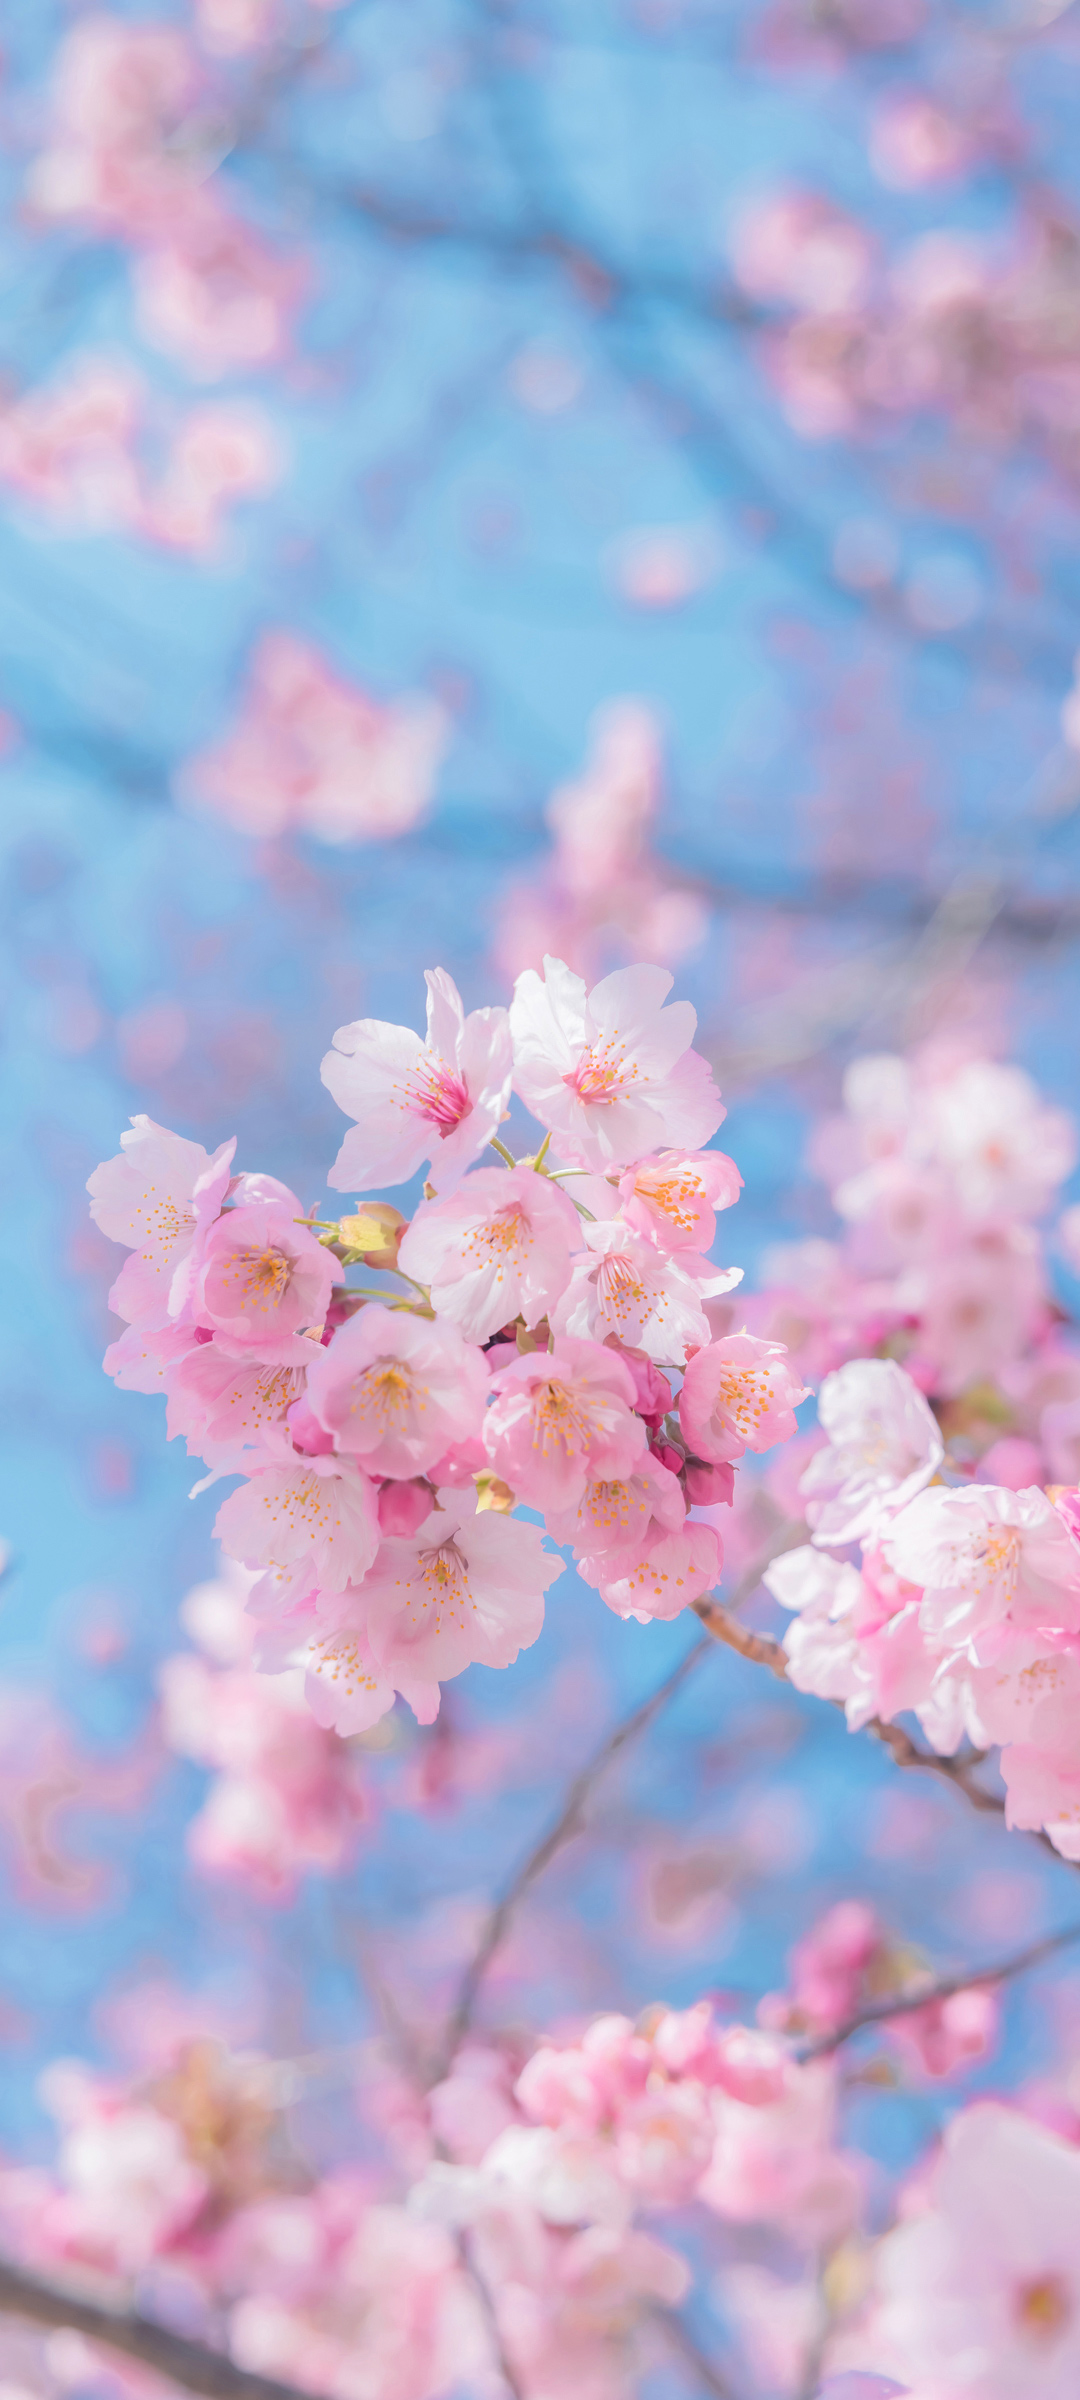 枝头上的粉色樱花